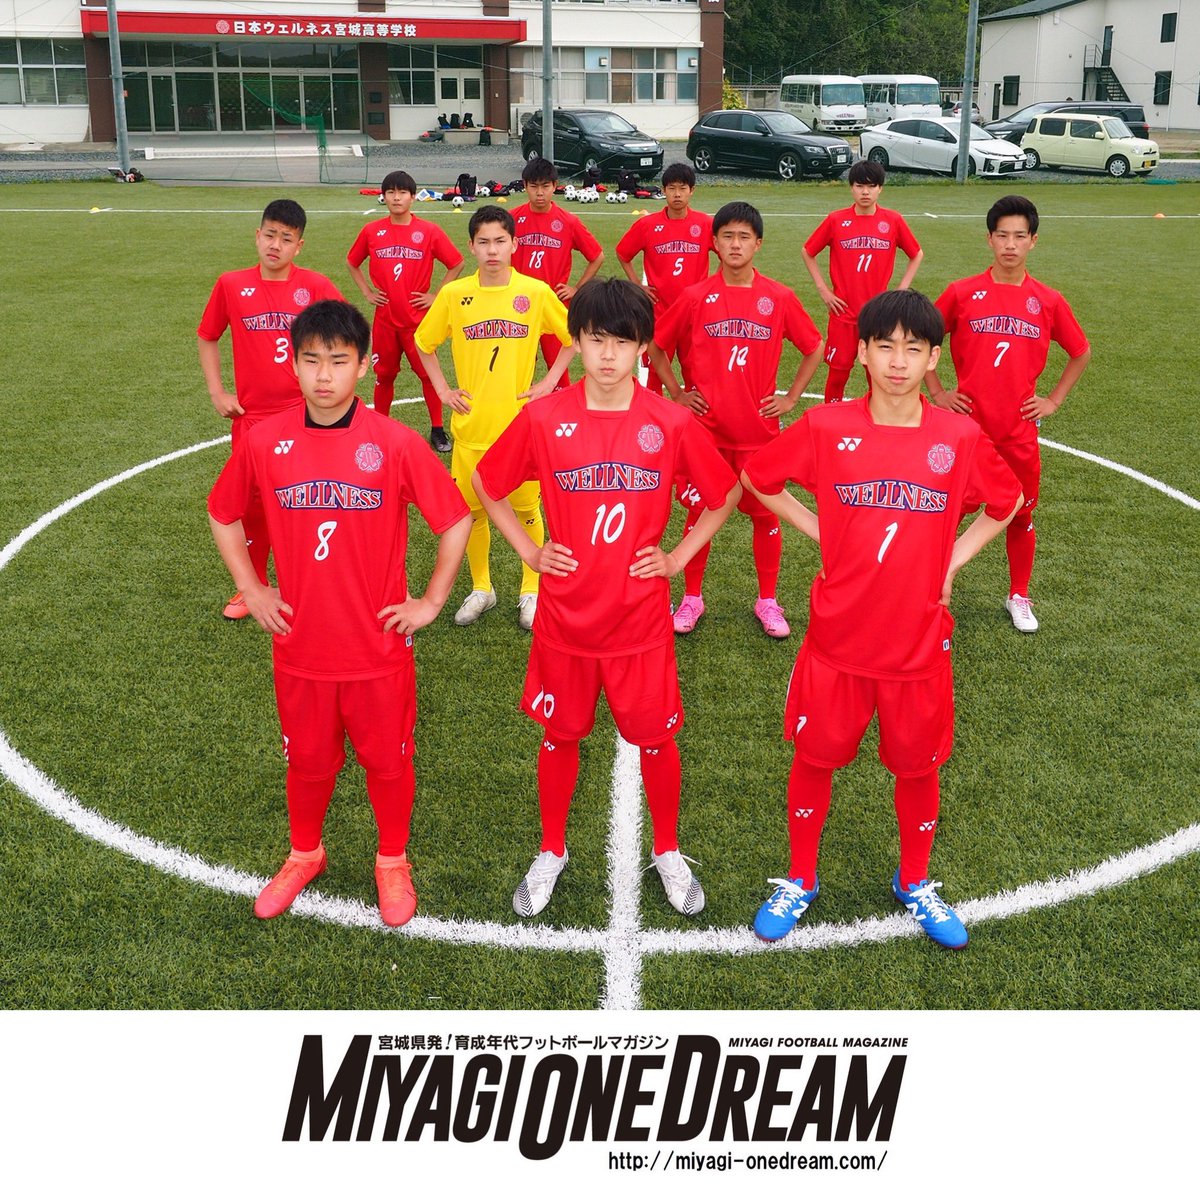 Miyagi One Dream 宮城県の高校サッカーシーンに新星が登場 1期生11人でスタートした日本ウェルネス宮城高校を取材させていただきました T Co Cglftpskyd